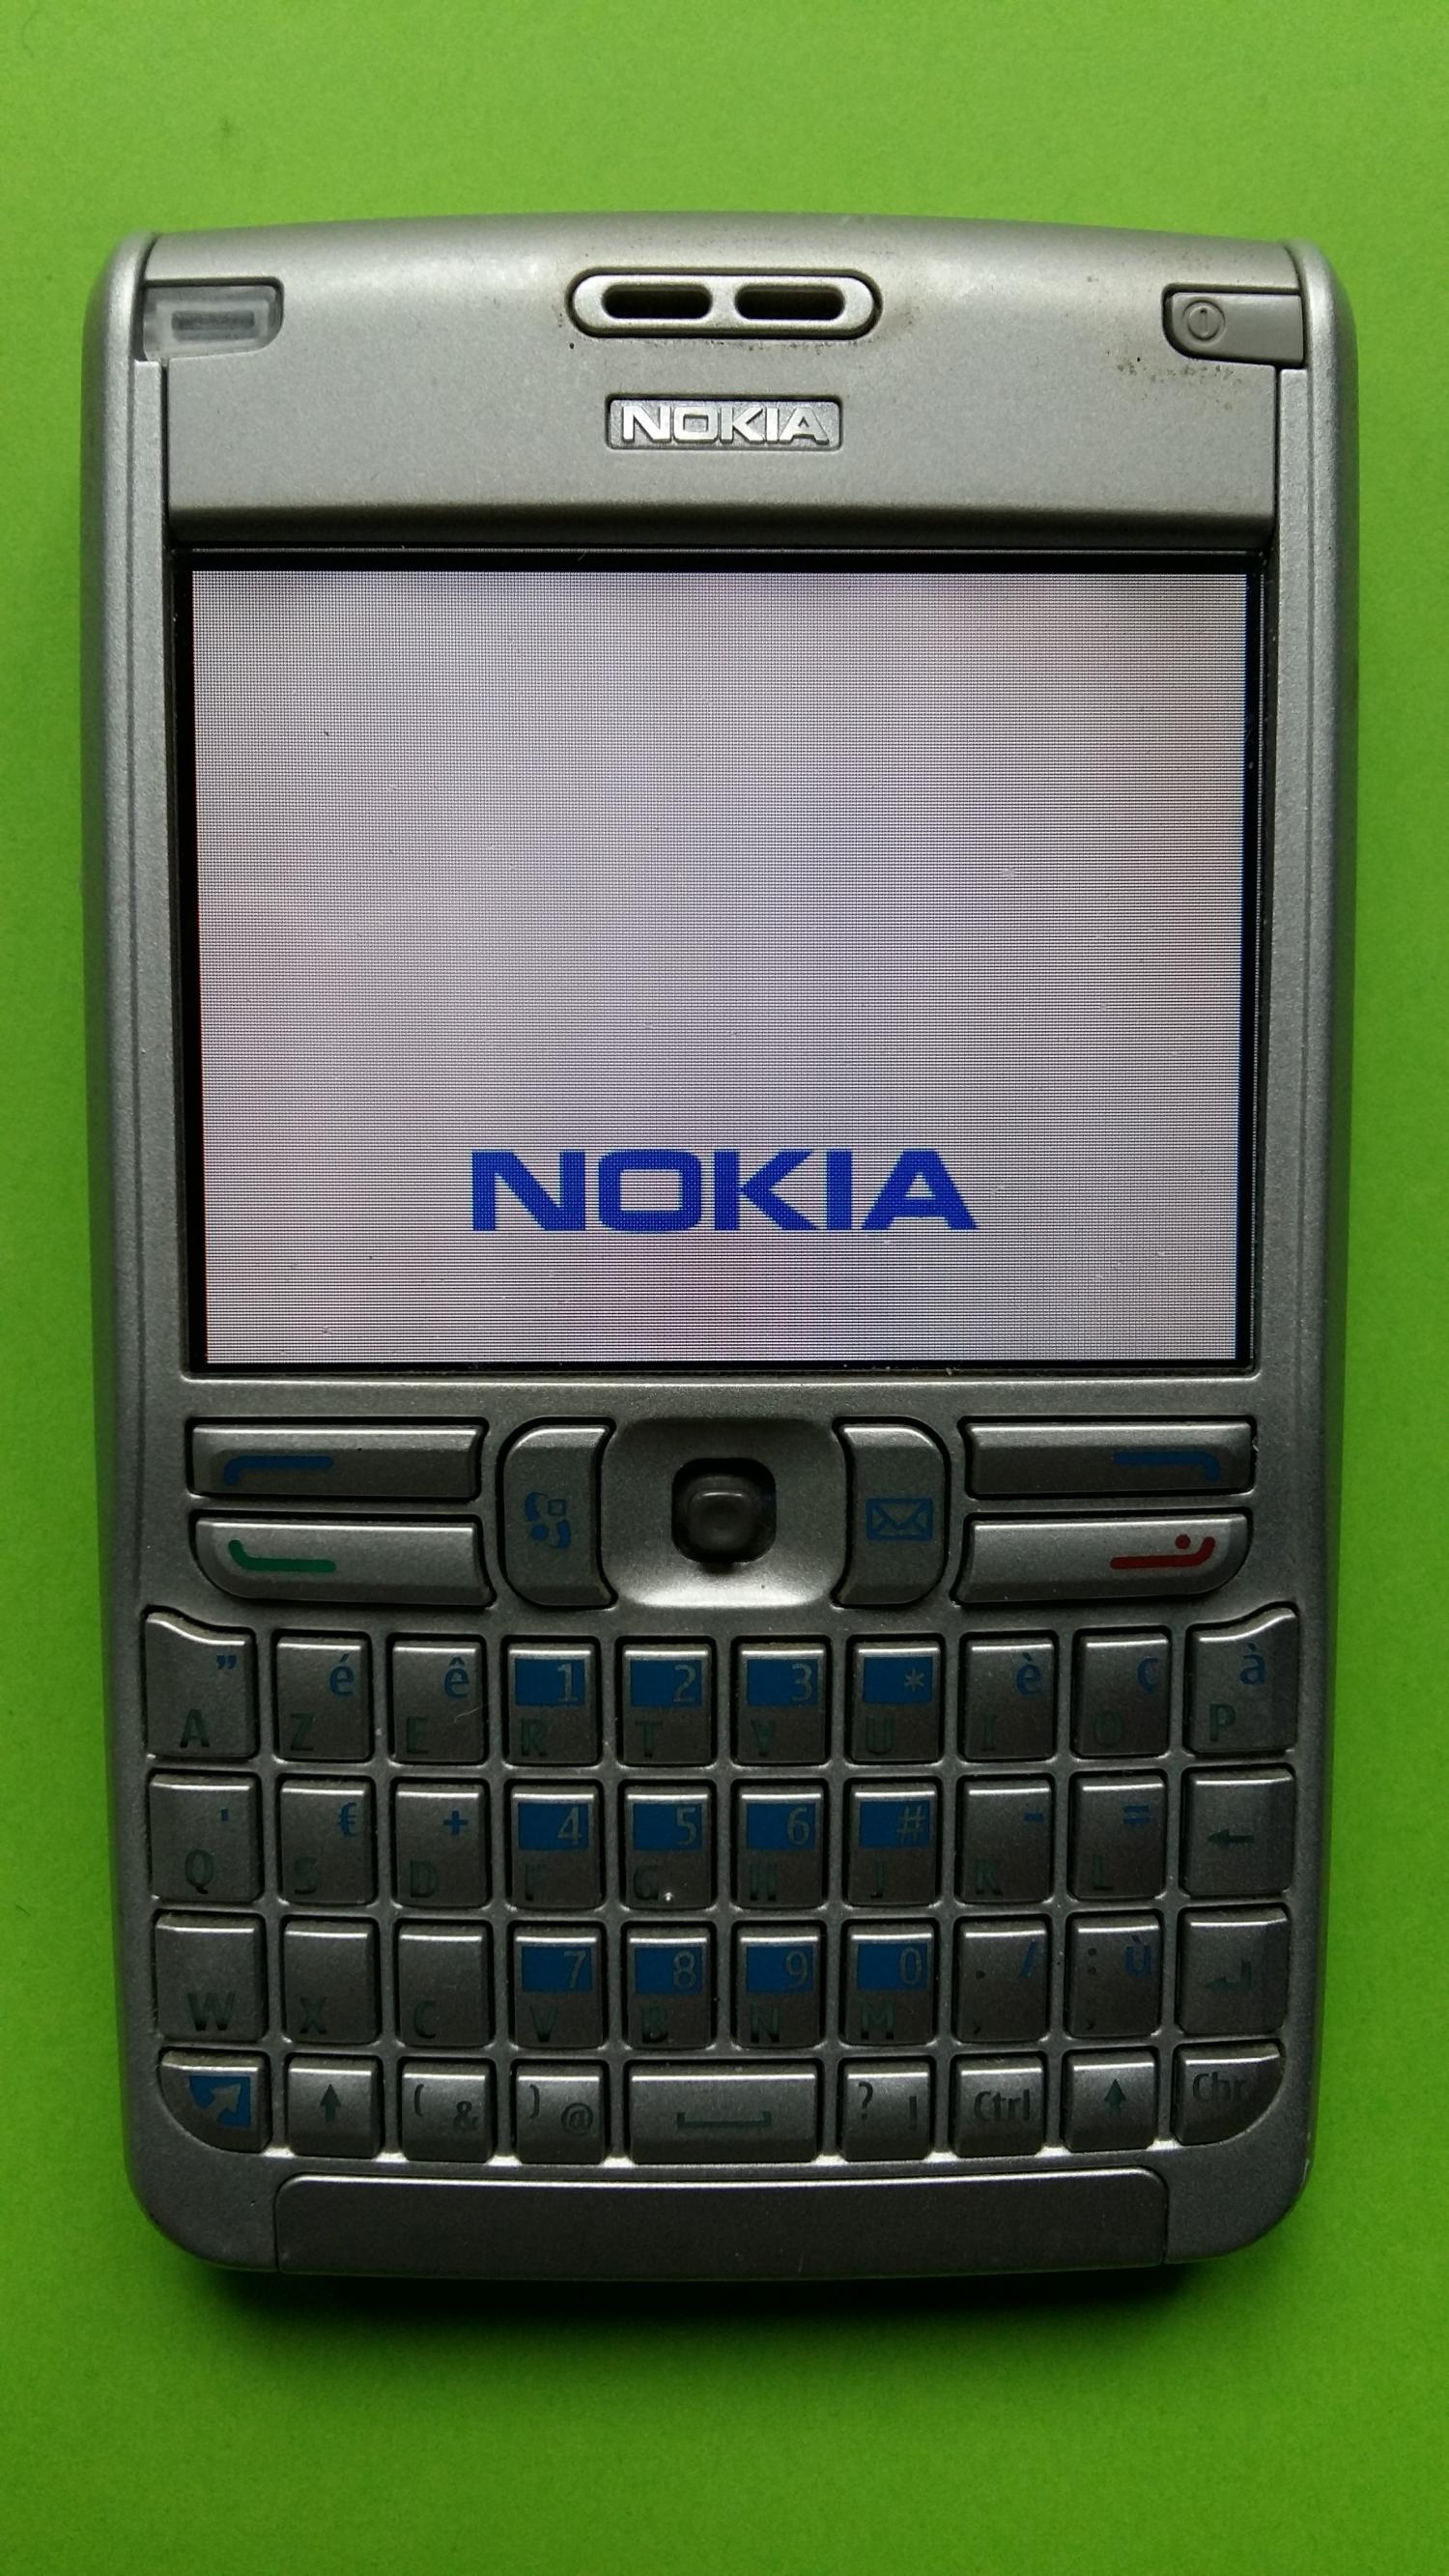 image-7339190-Nokia E61-1 (1)1.jpg